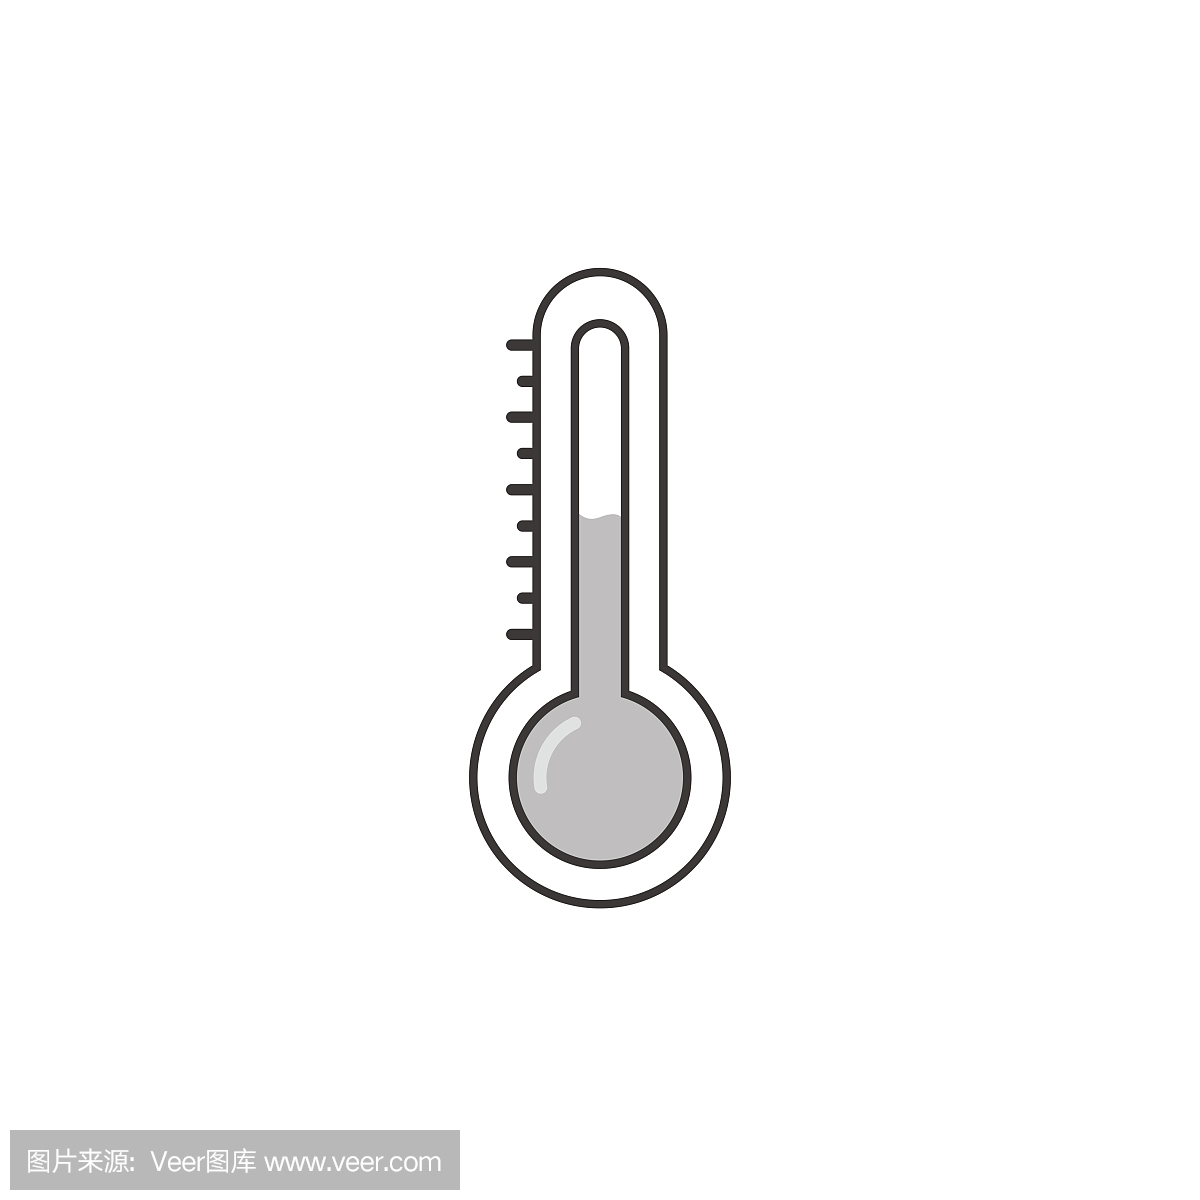 华氏温标,华氏温度,华氏温度计的,华氏温度计